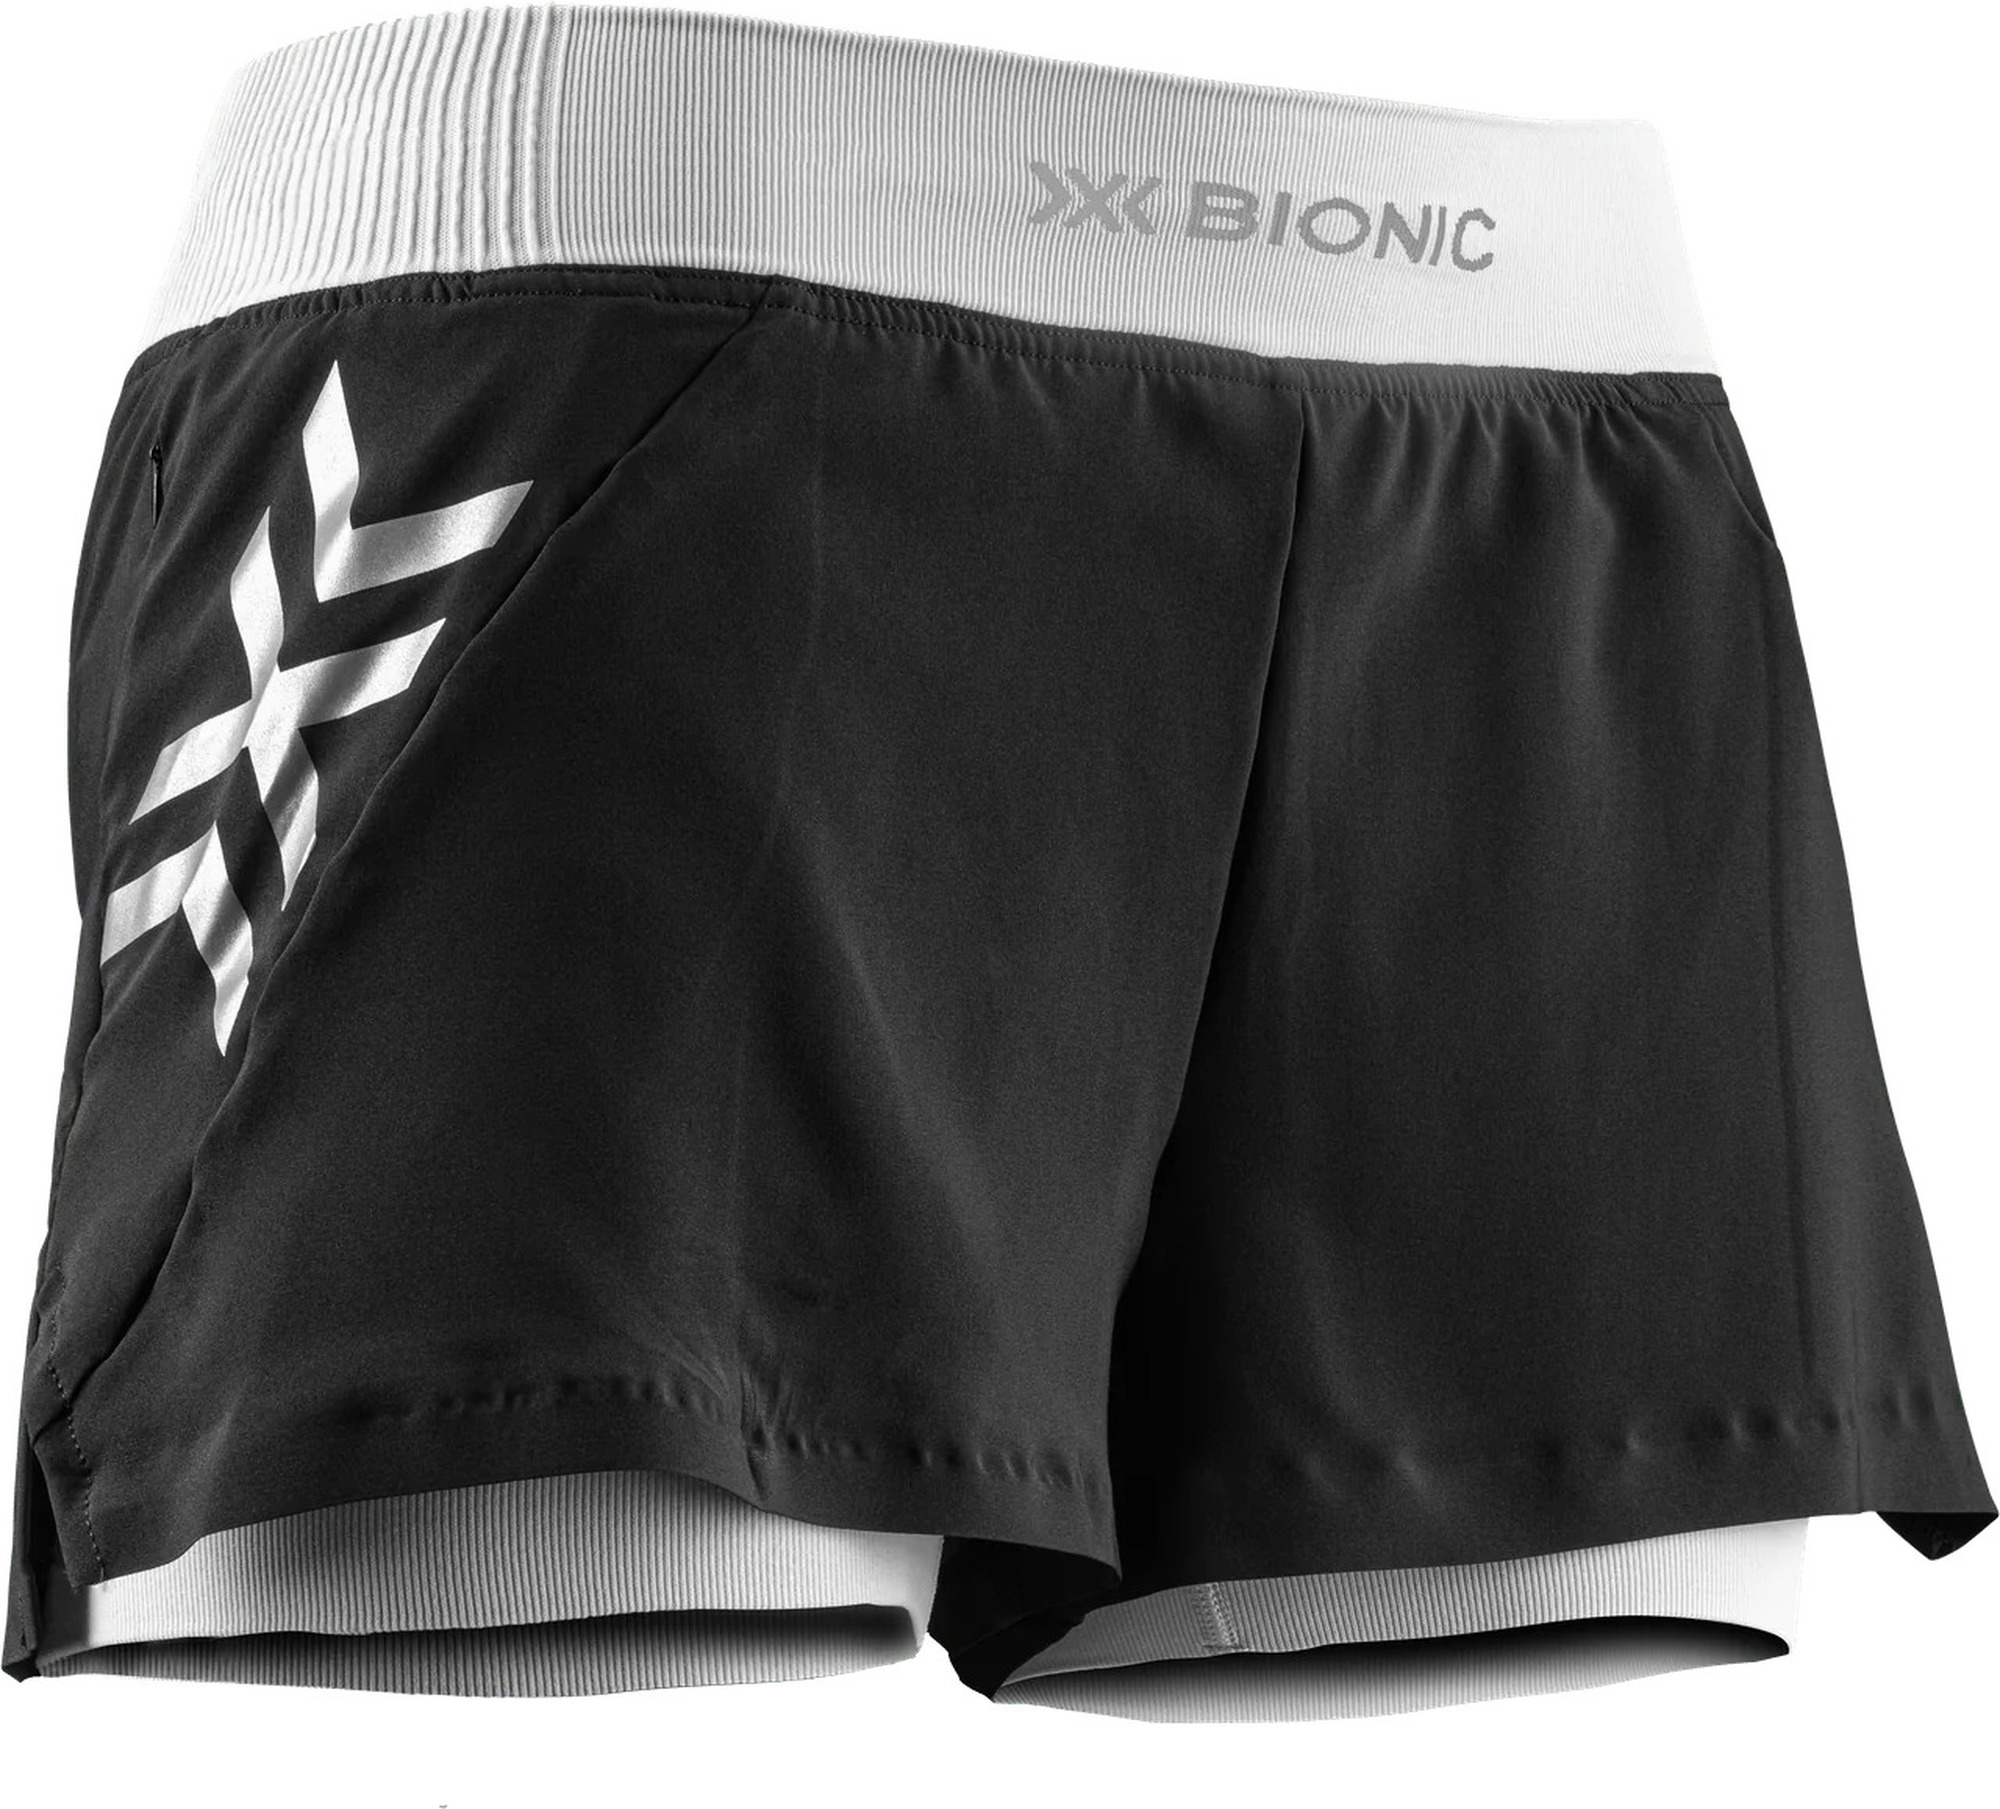 Ausprobiert: X-Bionic Twyce Race 2 in 1 Shorts